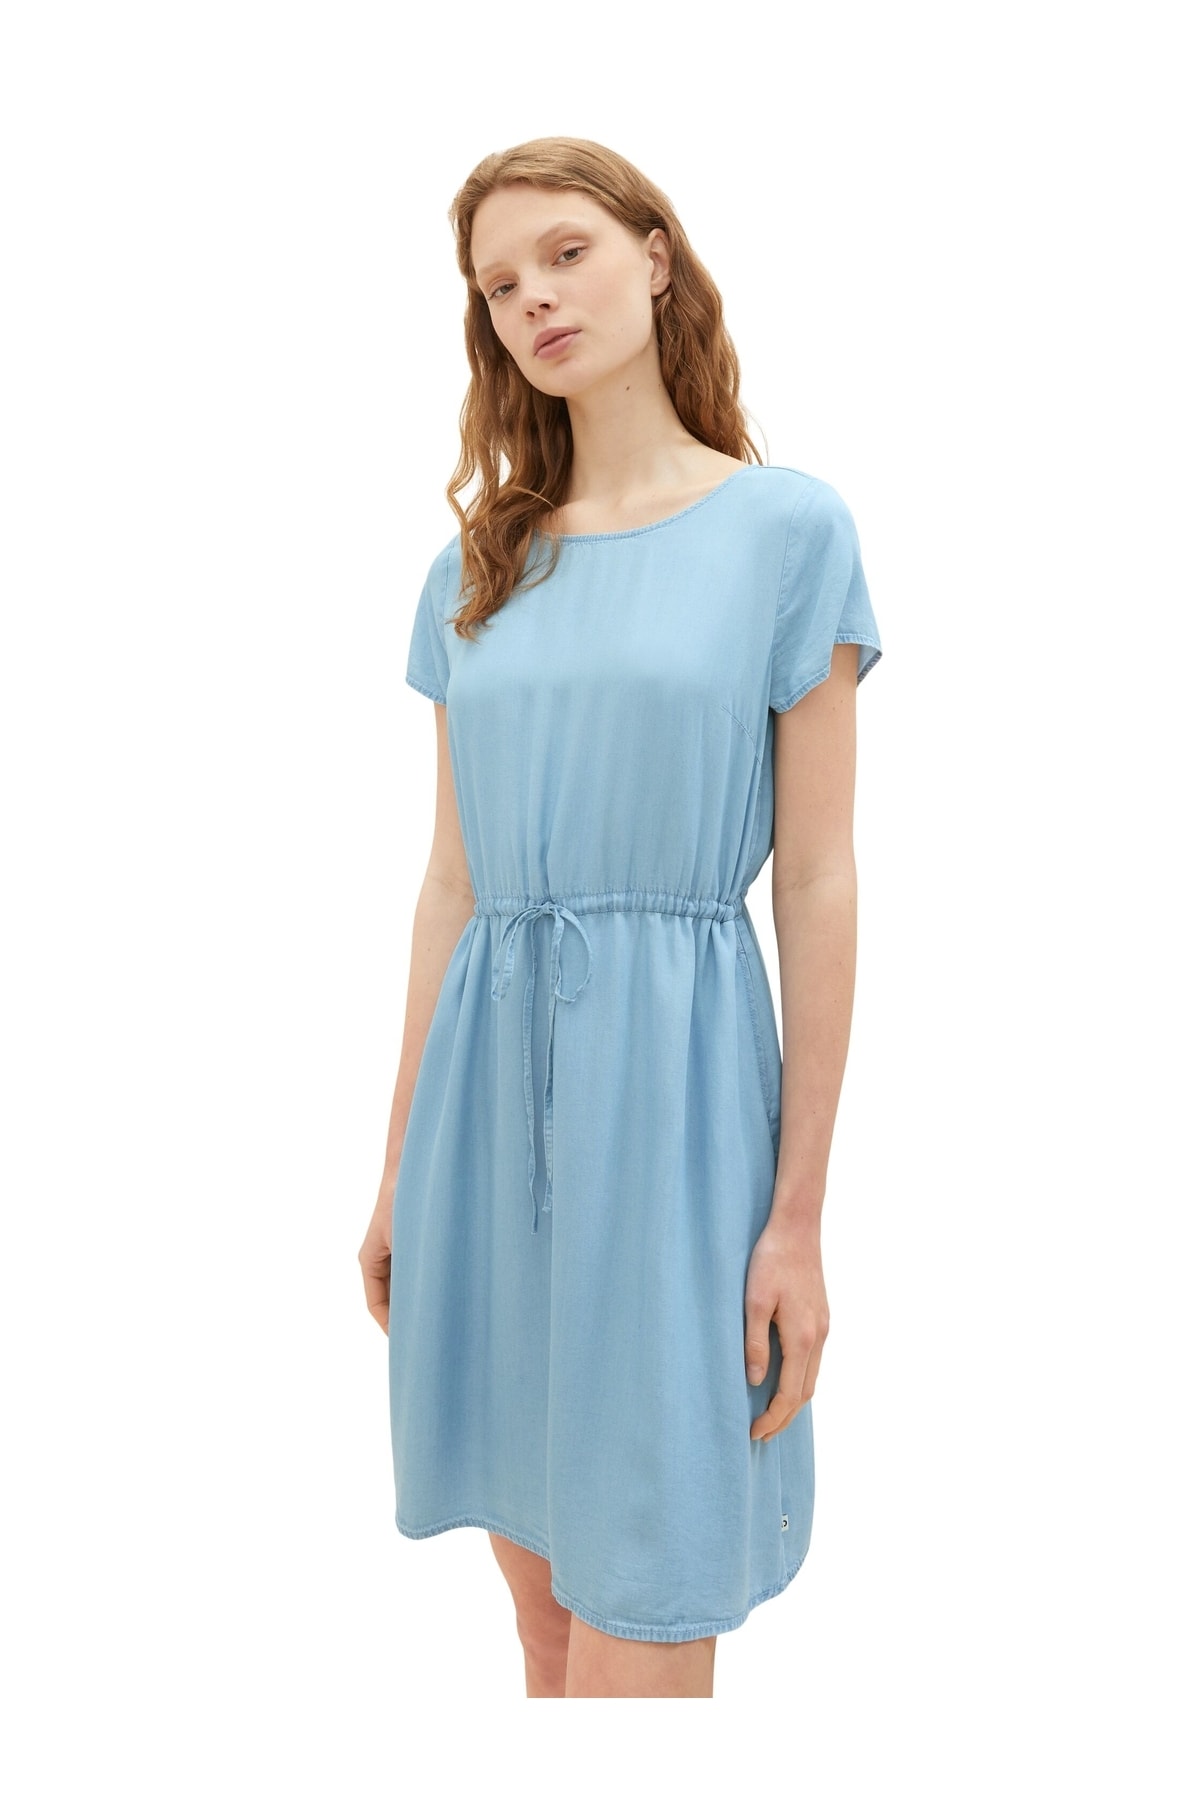 Платье - Бирюзовое - Базовое Tom Tailor Denim, бирюзовый худи tom tailor размер l голубой бирюзовый